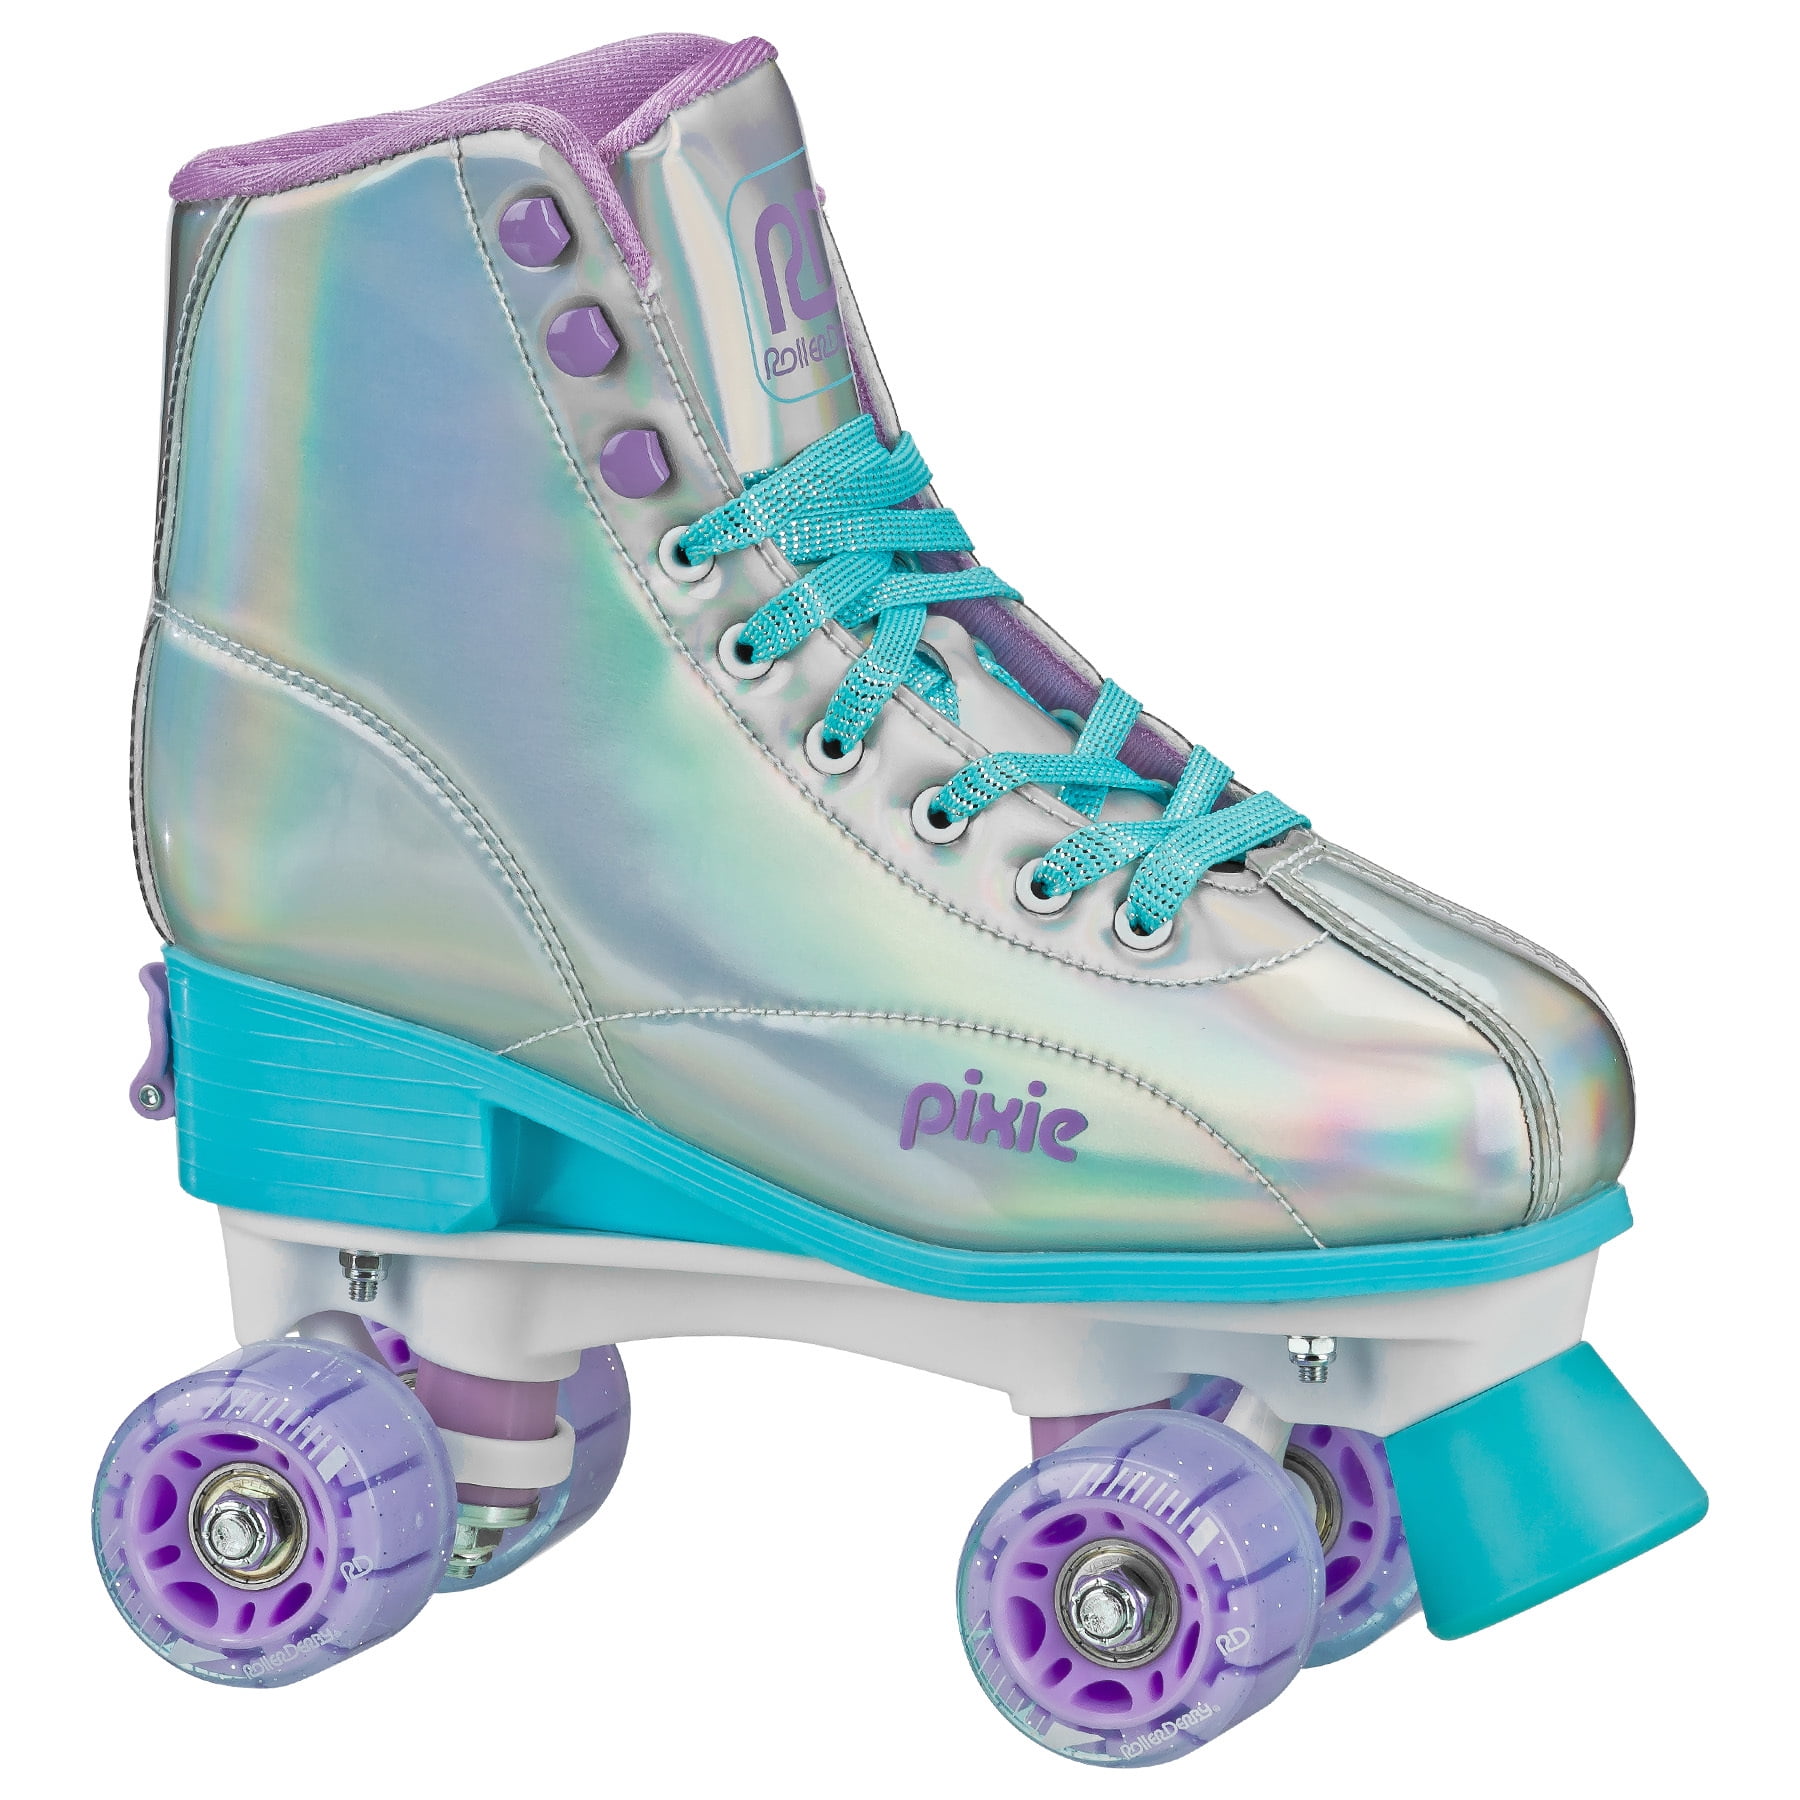 Girls Adjustable High Top Quad Skates by Roller Derby Medium Size 3-6 for sale online 